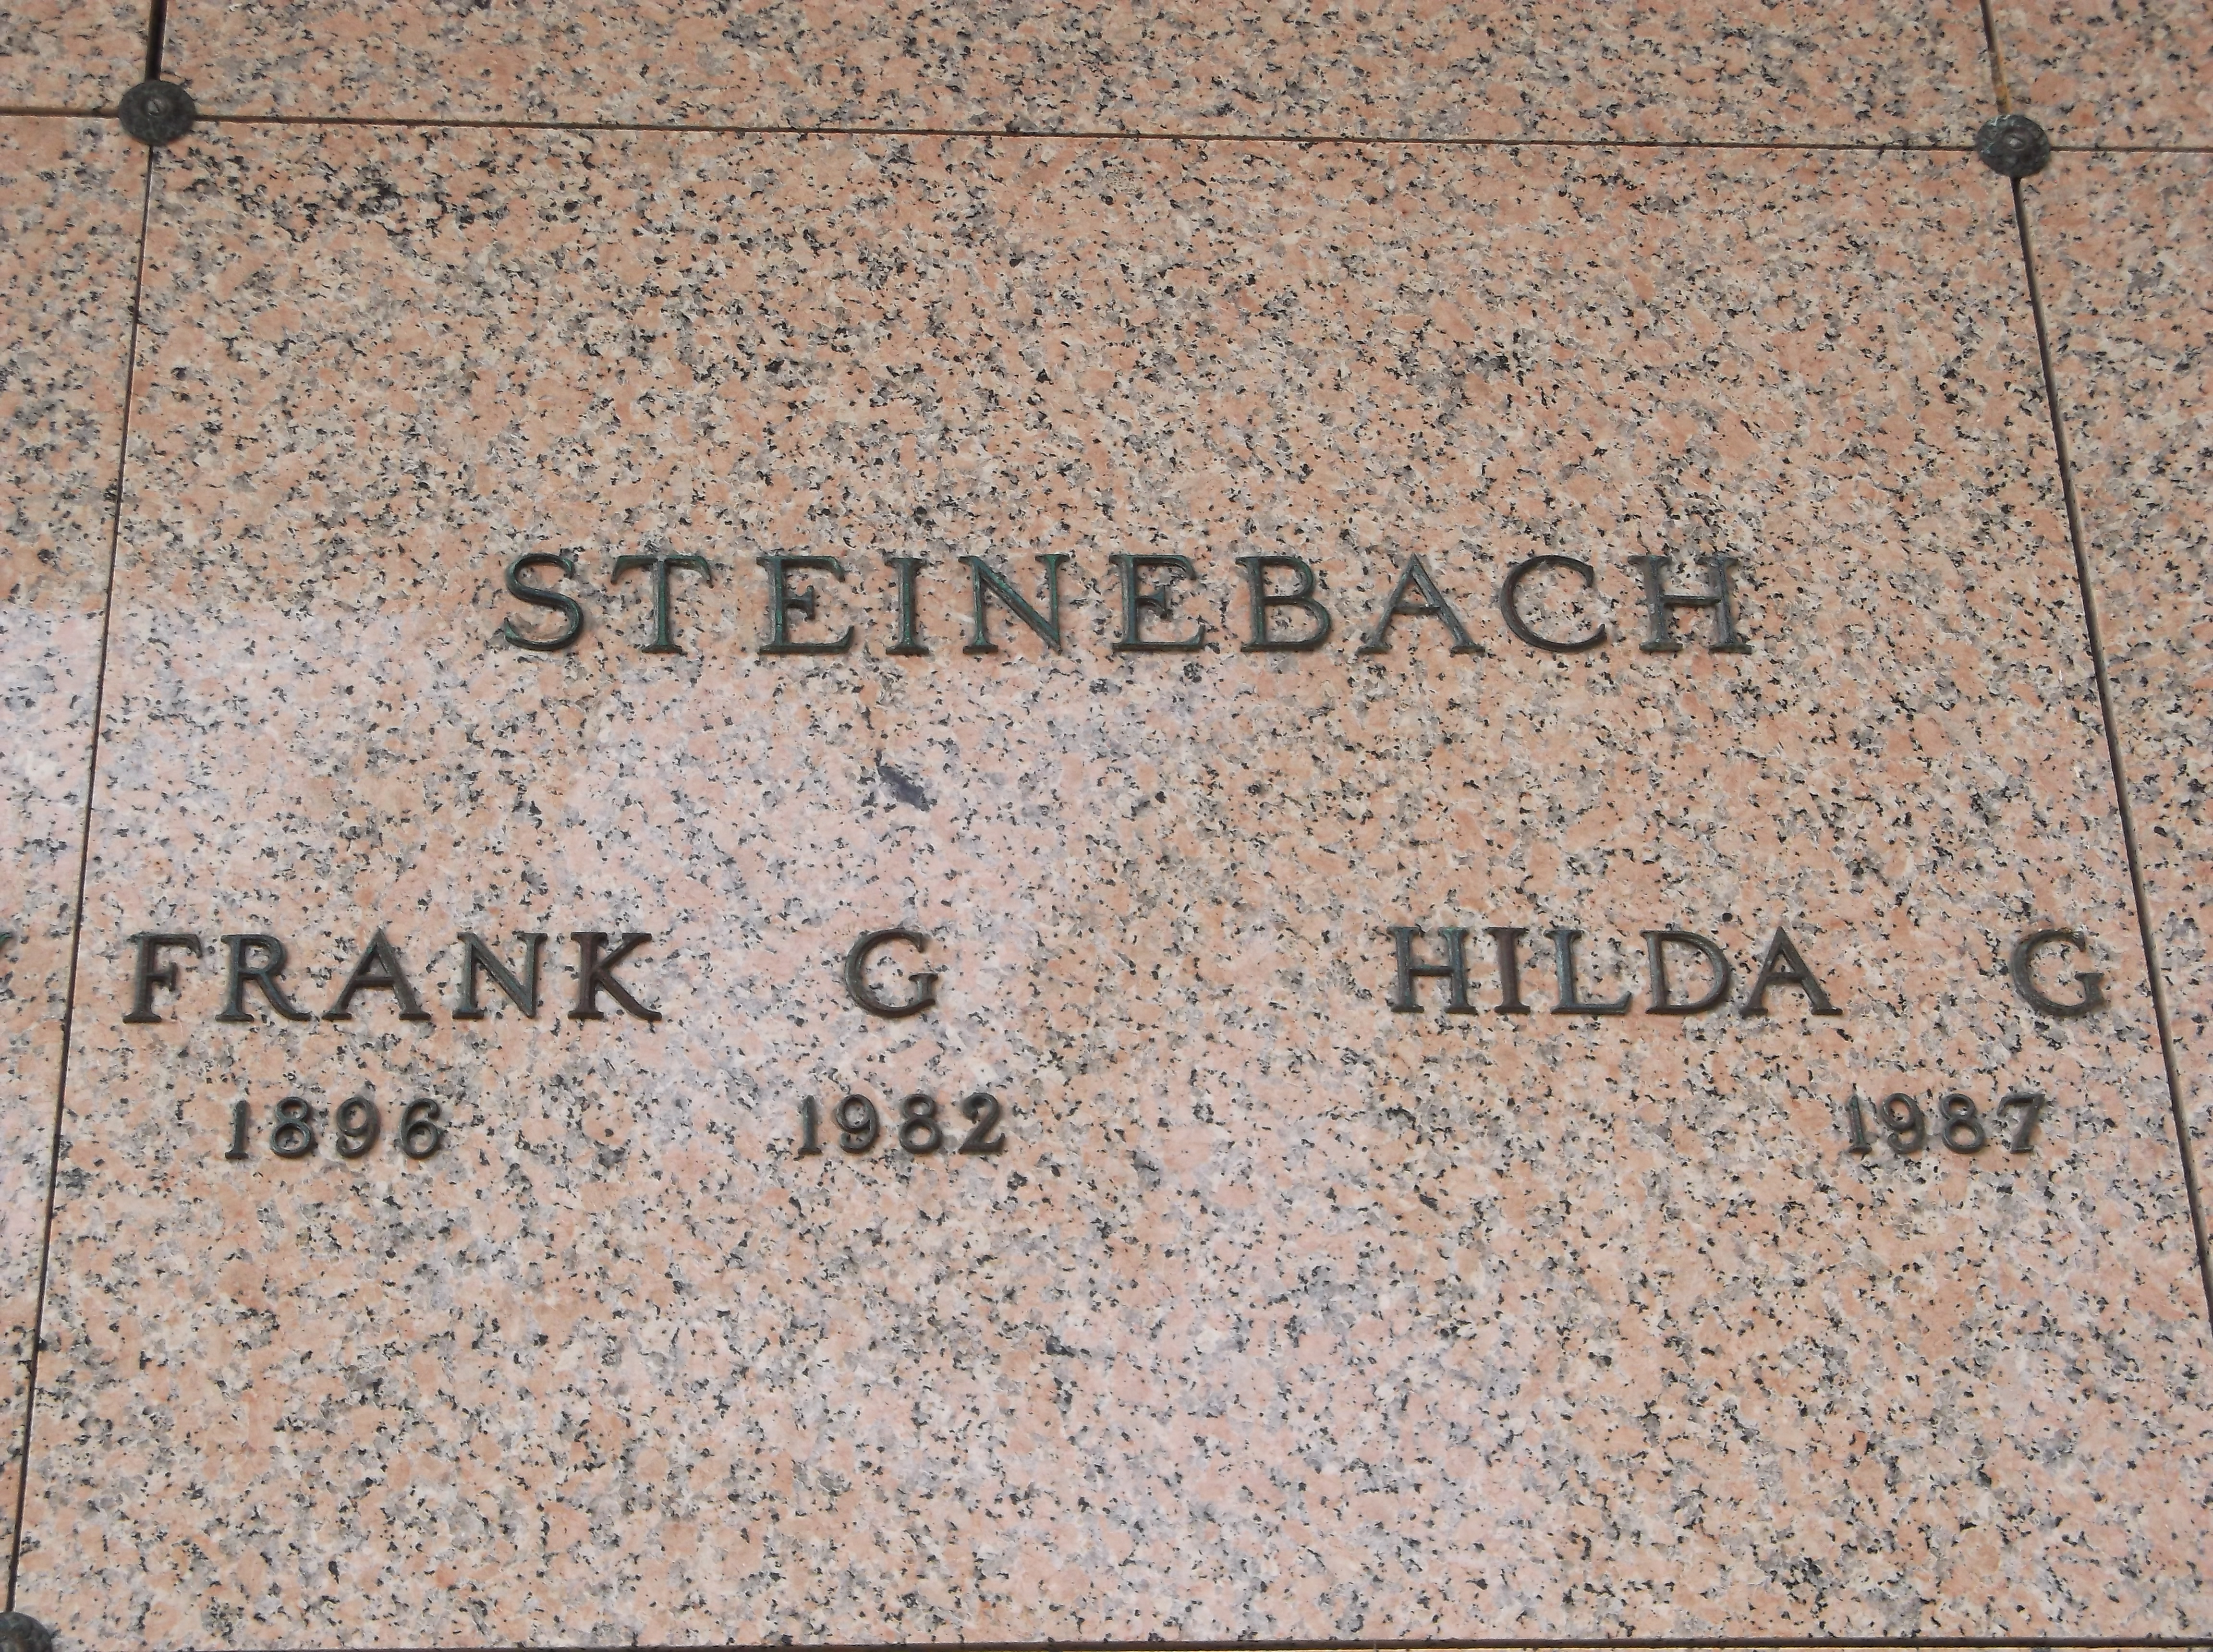 Hilda G Steinebach